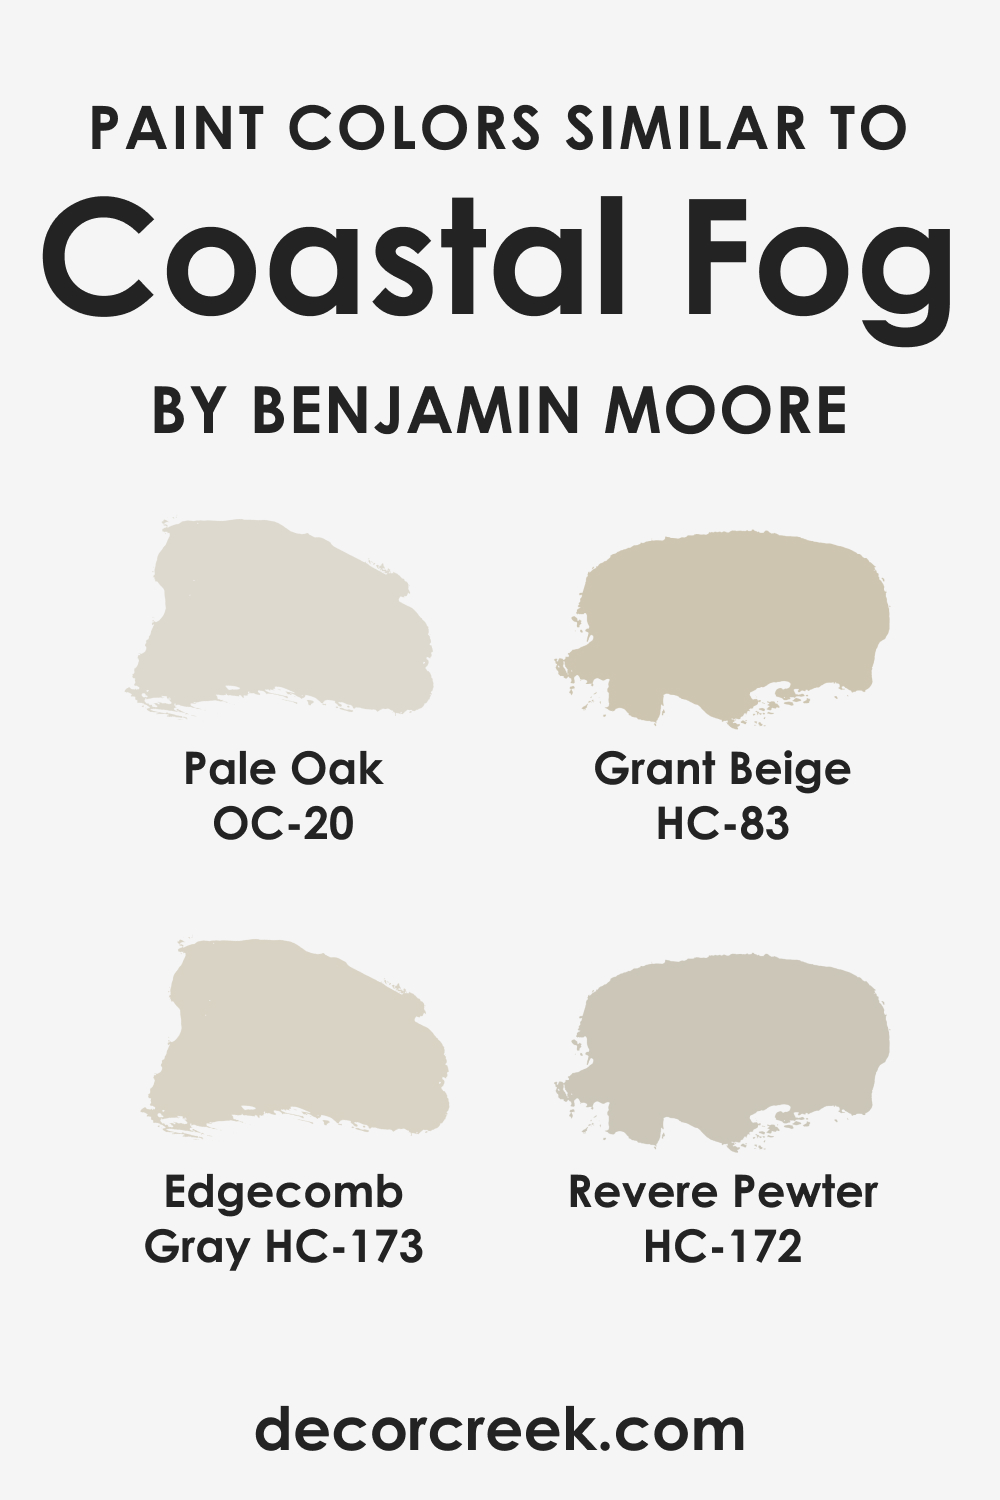 Colors Similar to Coastal Fog AC-1